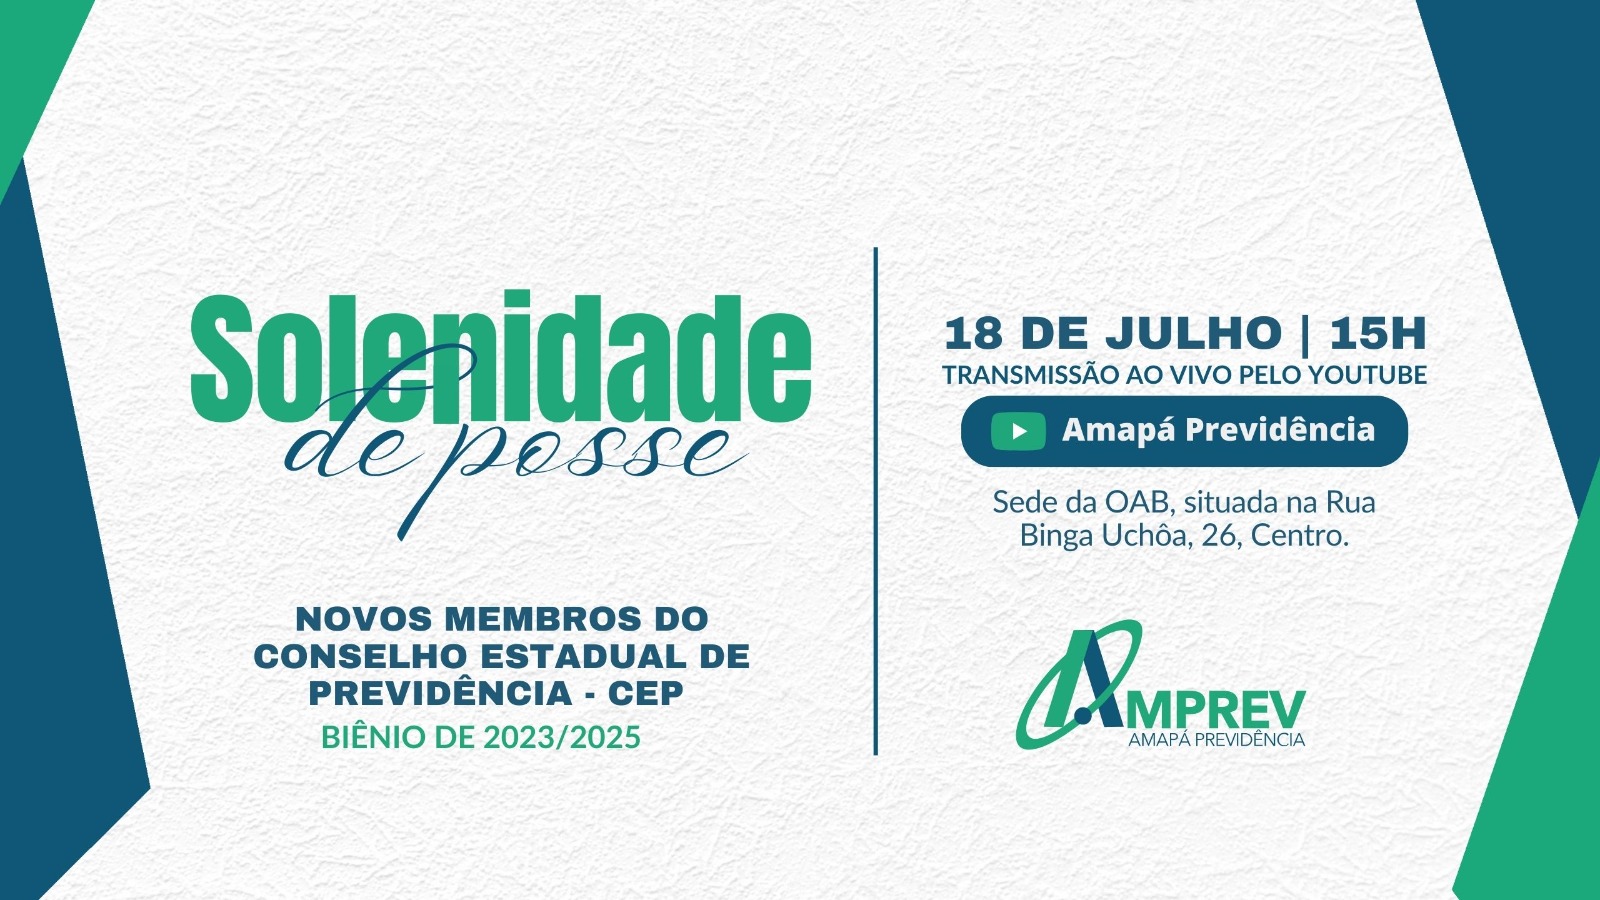 How to get to Amapá Previdência AMPREV/CEP in Macapá by Bus?